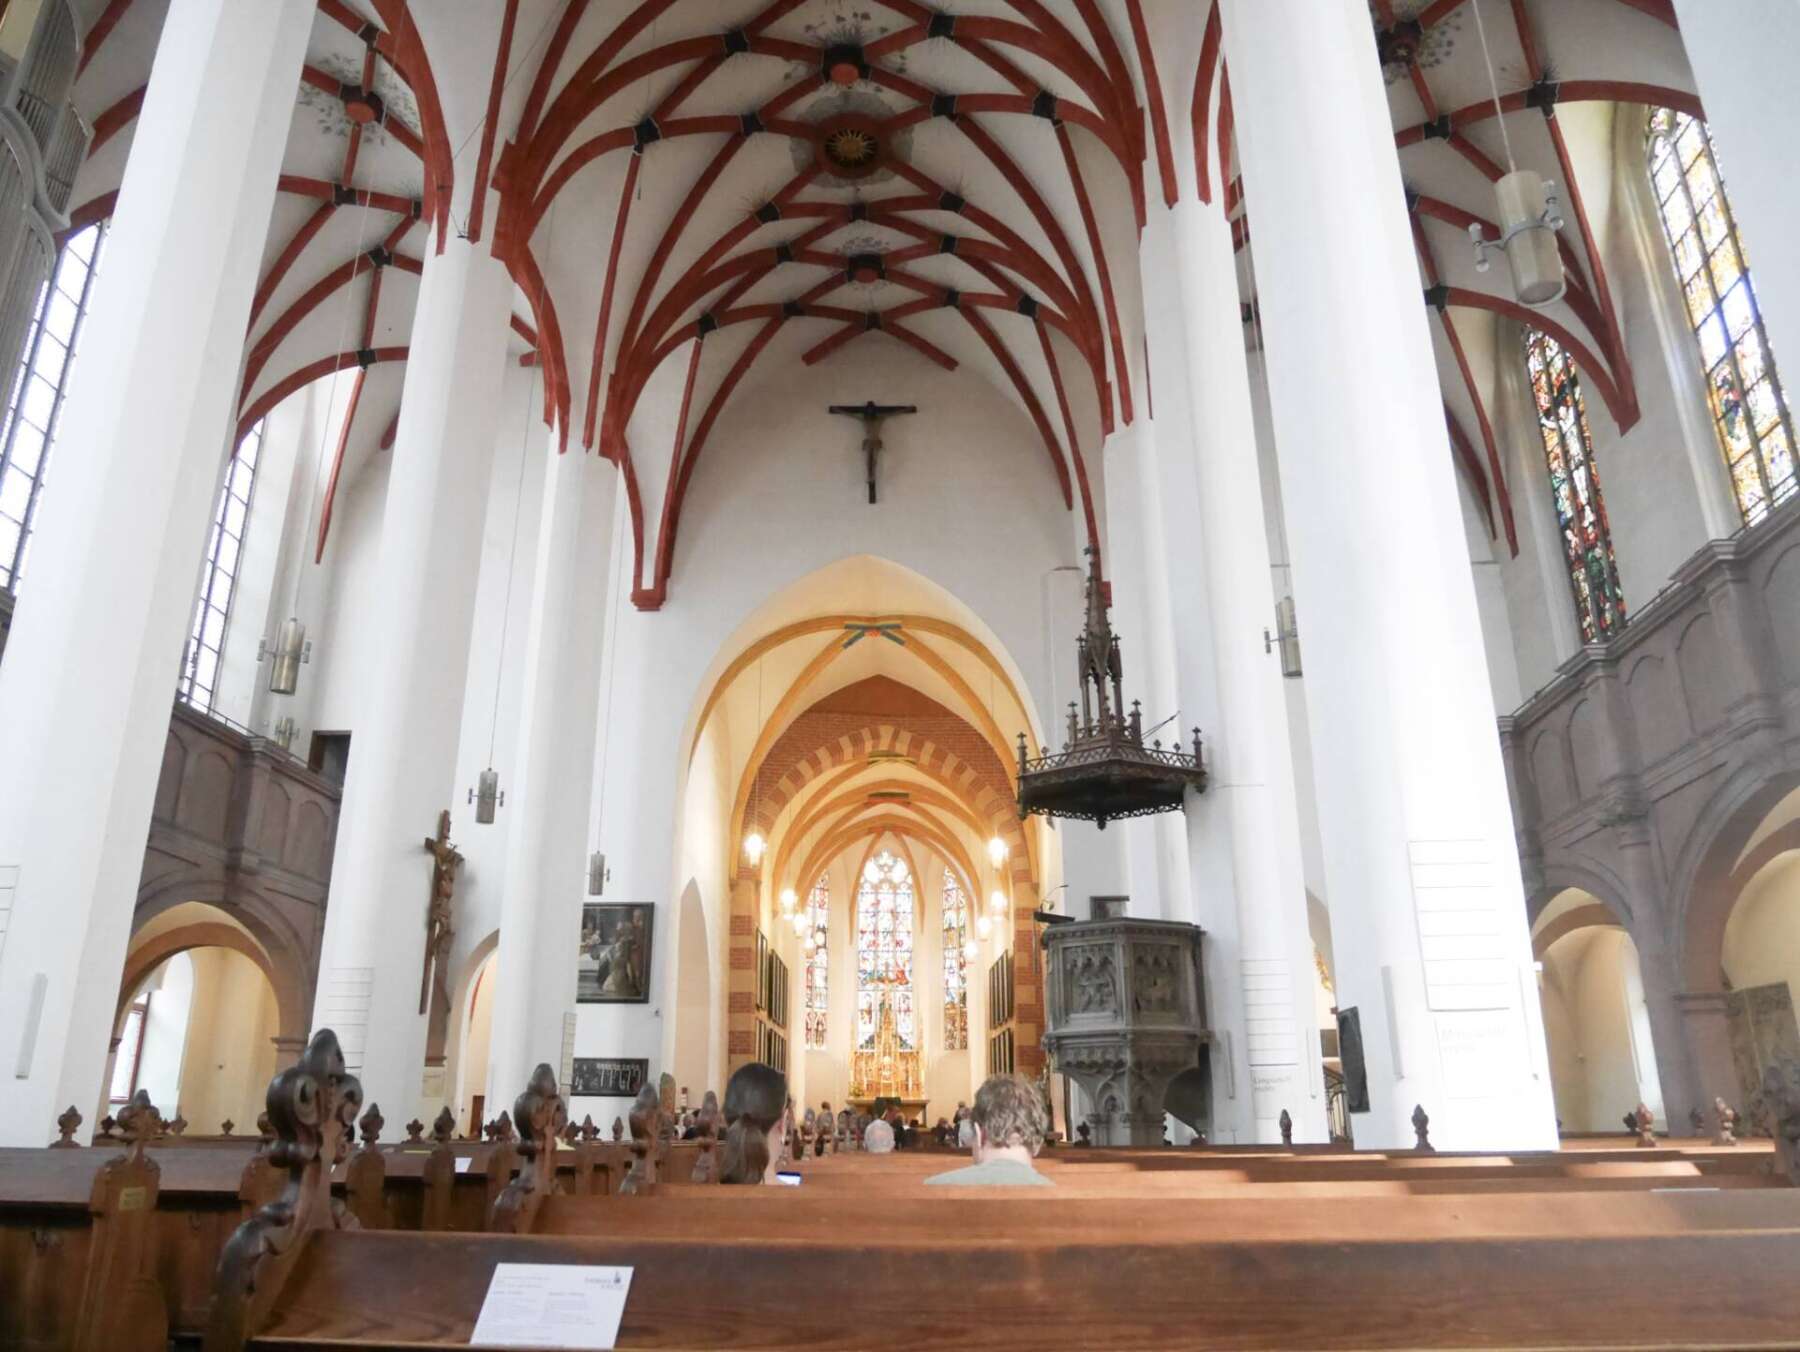 โบสถ์นักบุญโธมัส ไลพ์ซิก (St. Thomas Church Leipzig)